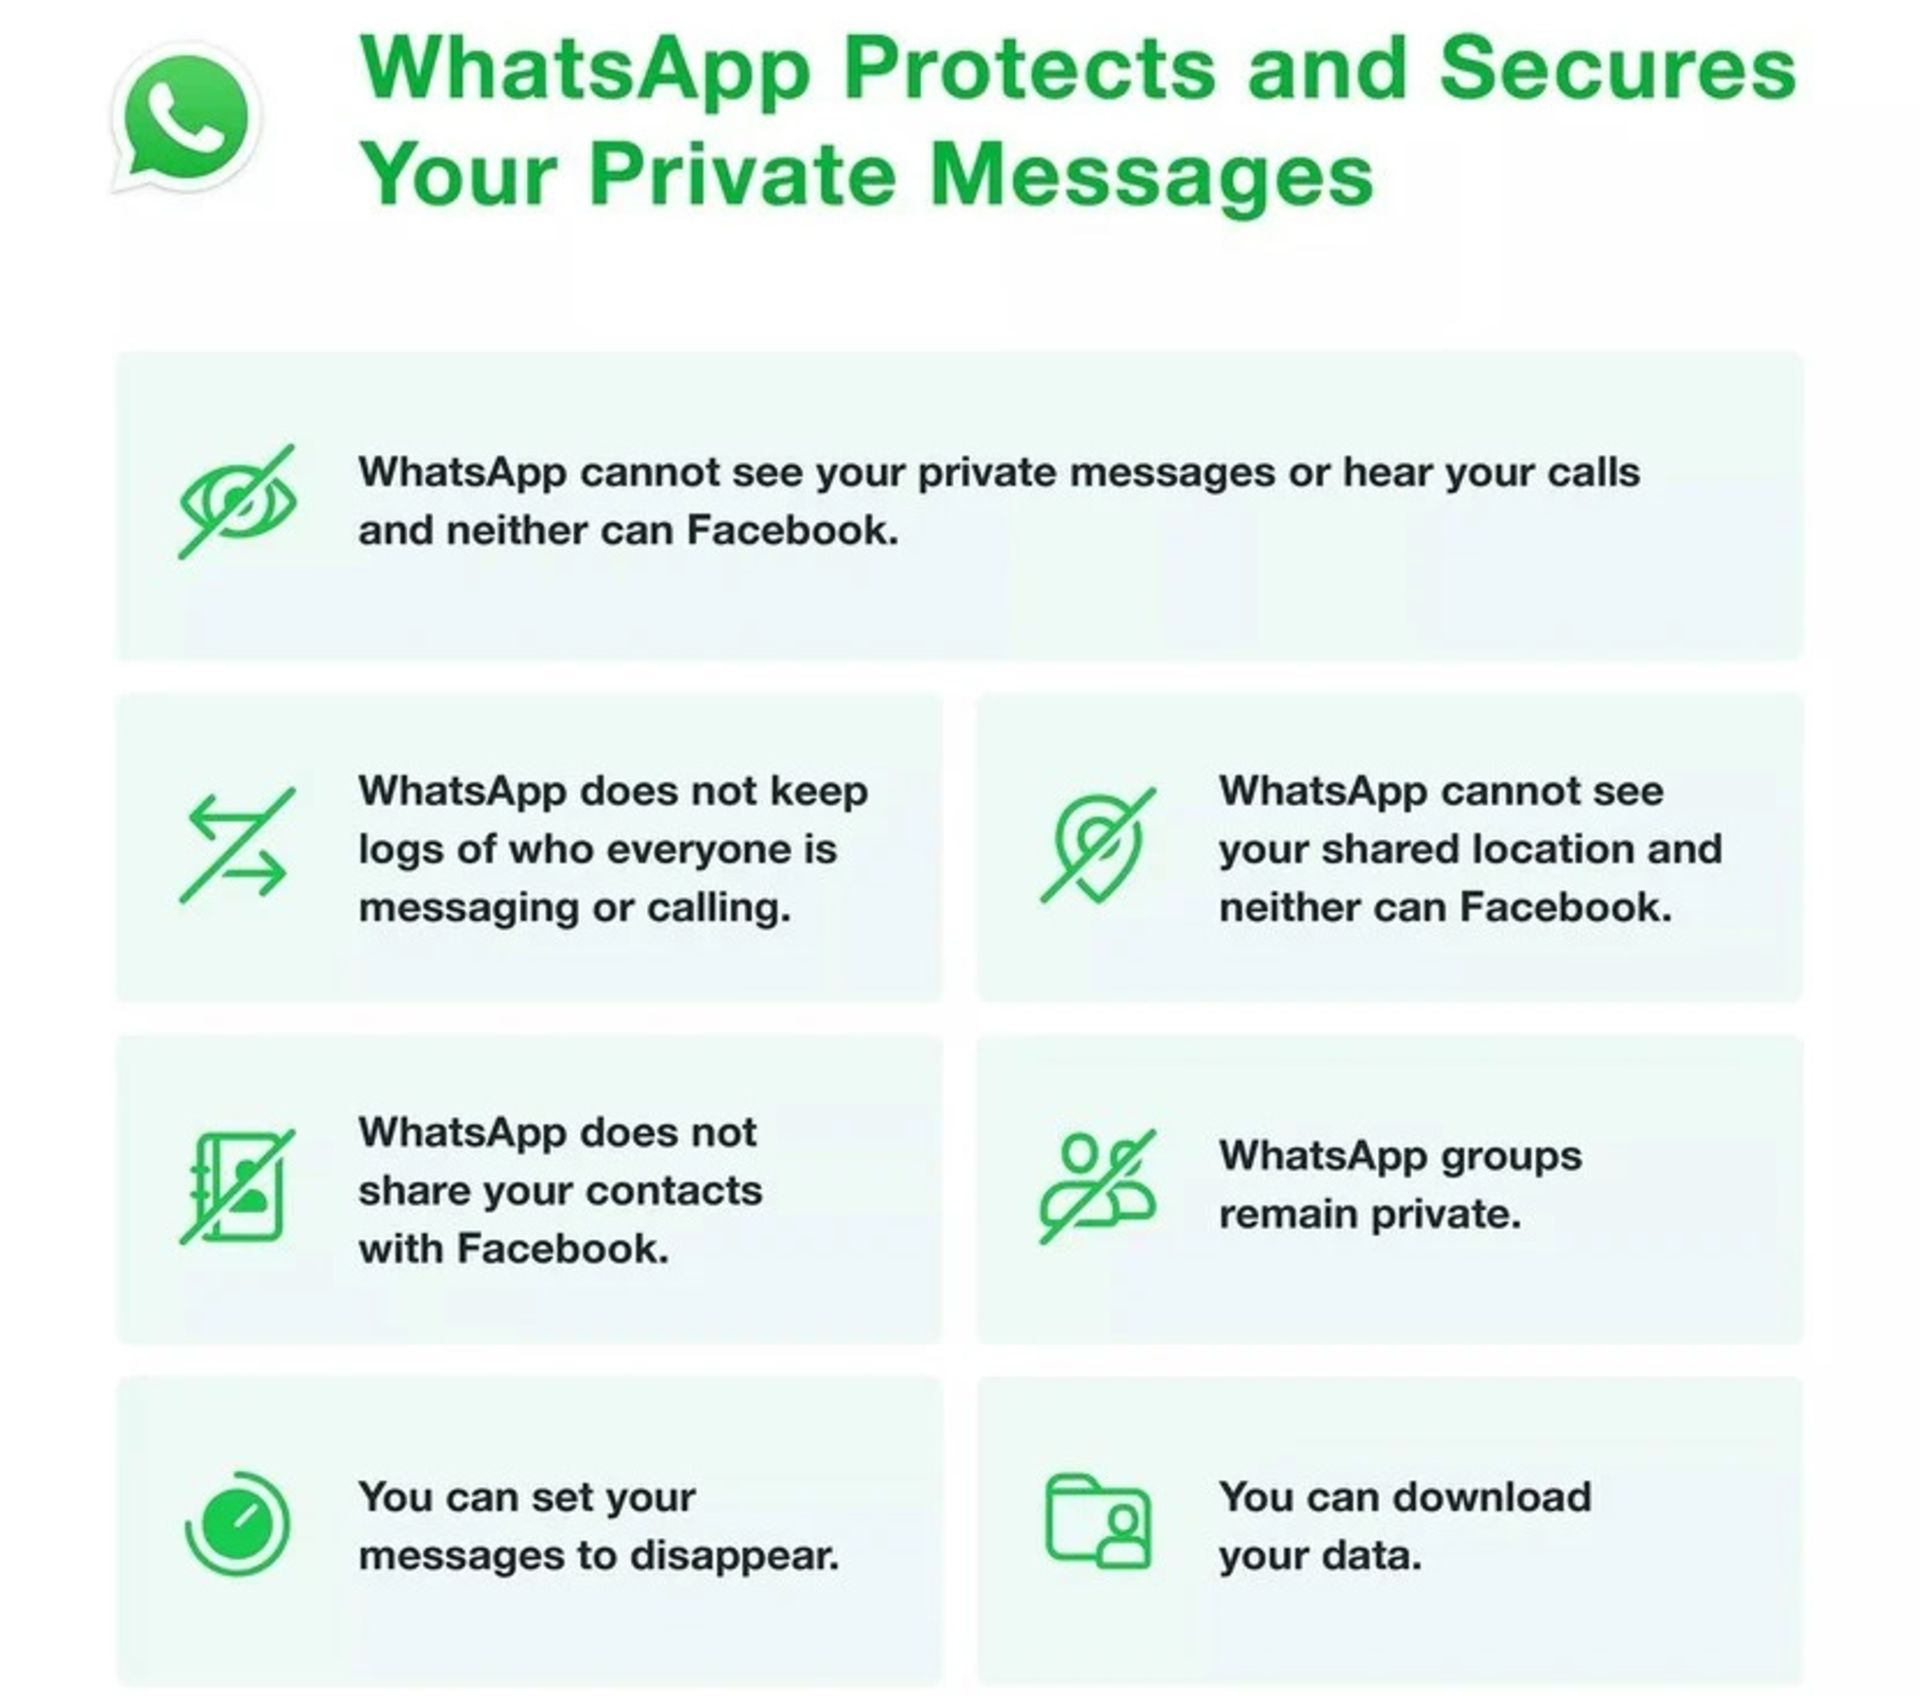 صفحه FAQ جدید واتساپ / WhatsApp و جزئیات سیاست جدید حریم خصوصی